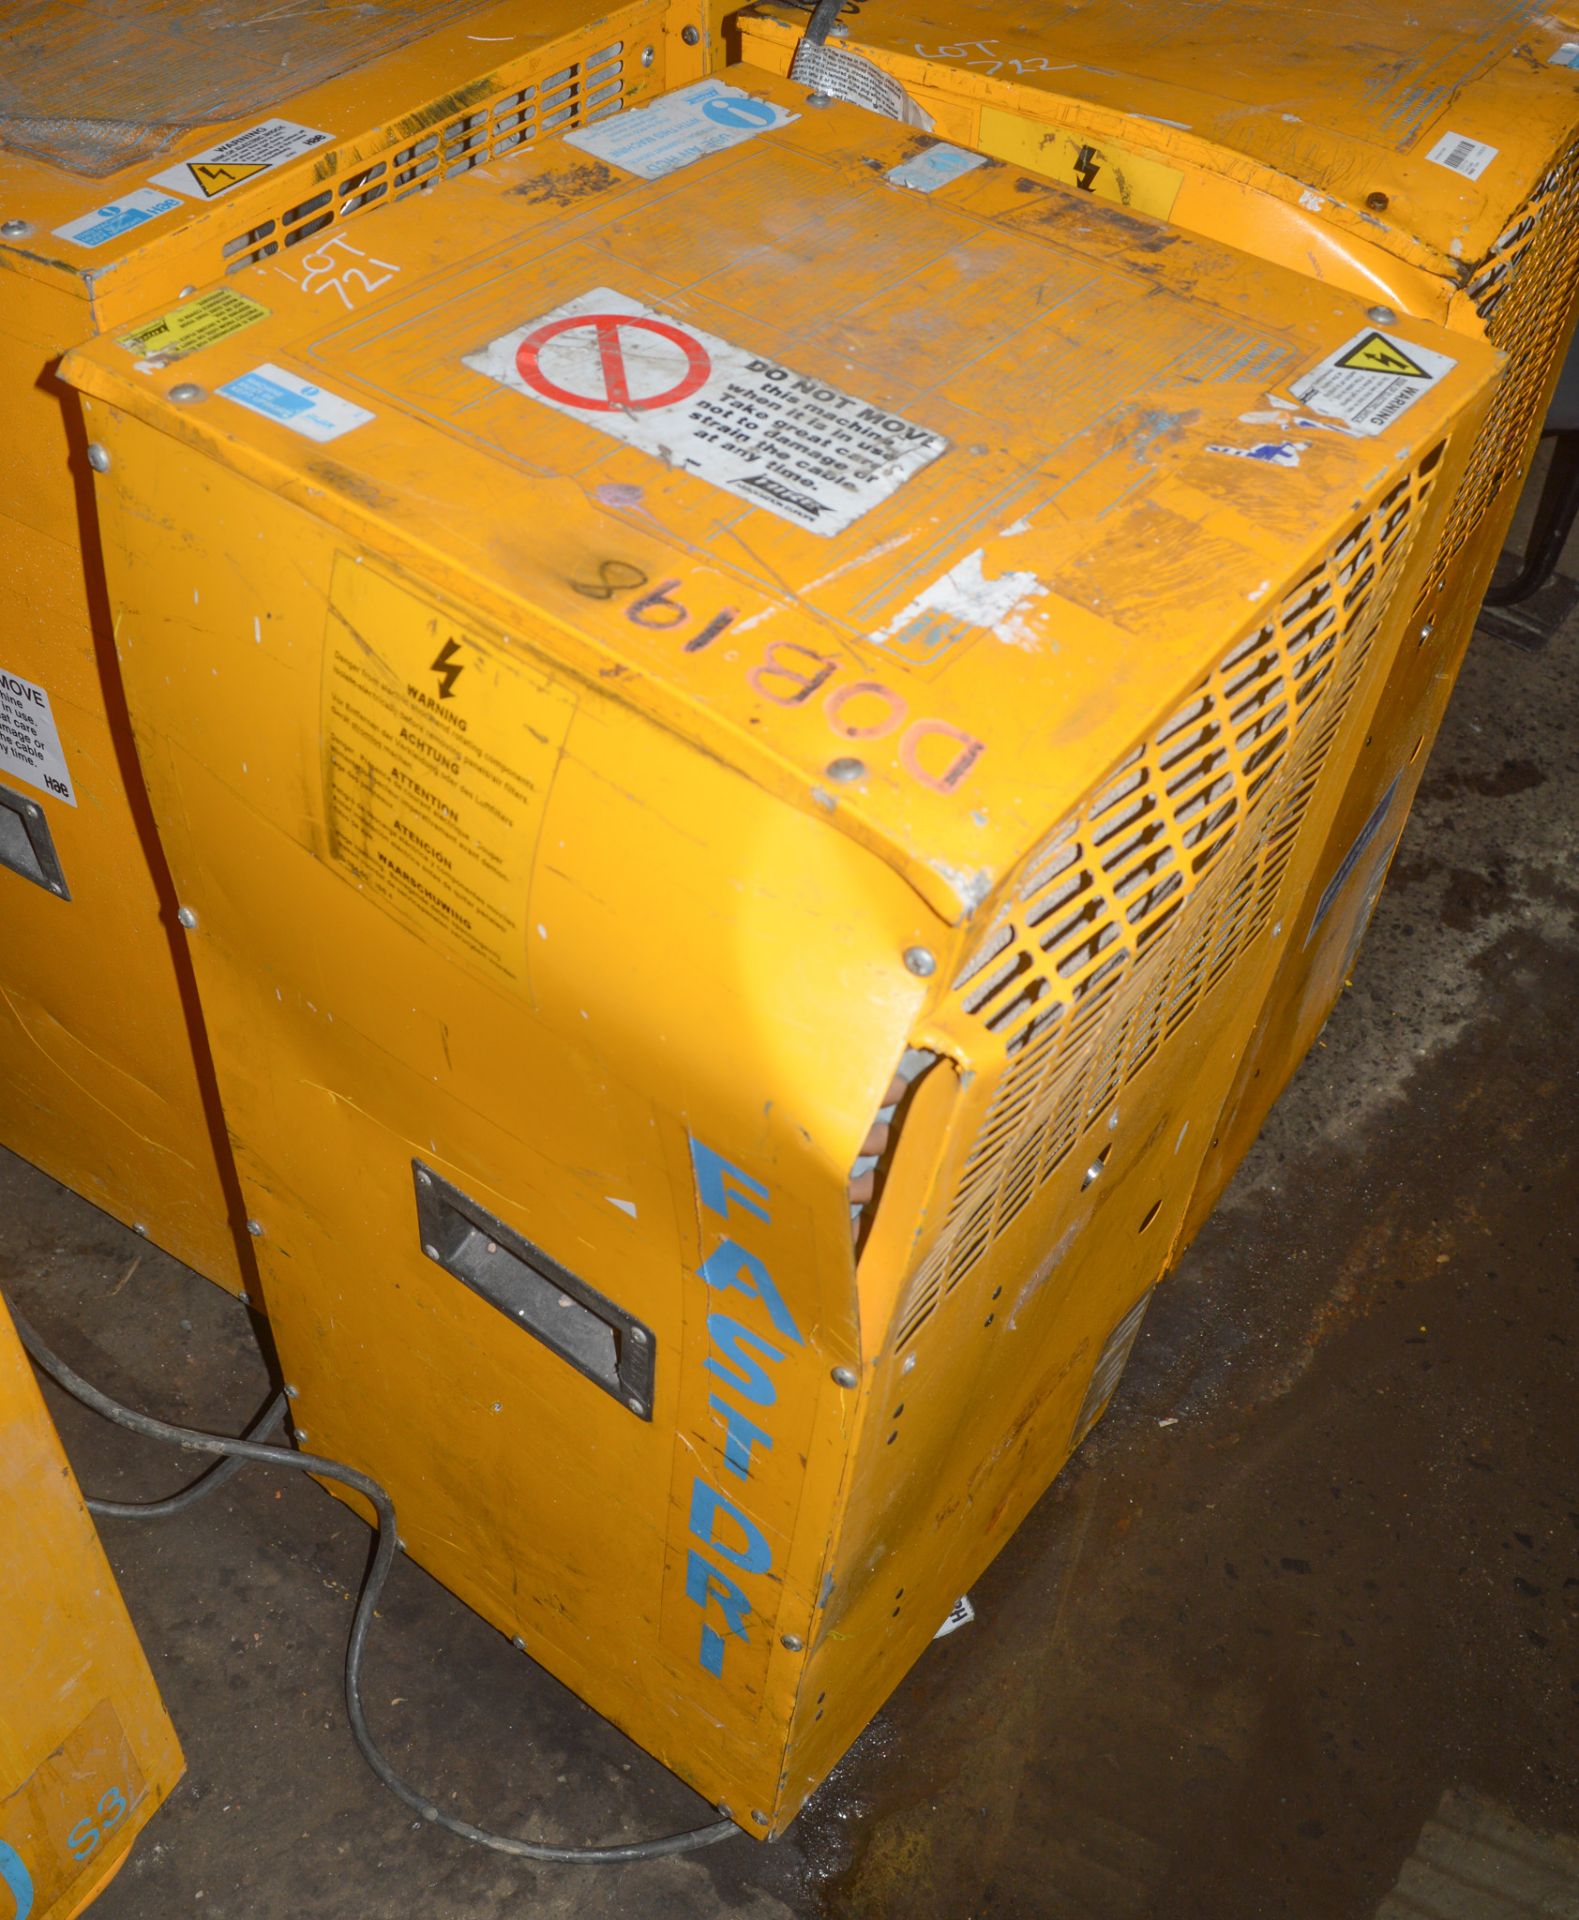 ANDREWS FAST-DRI 240 volt dehumidifier